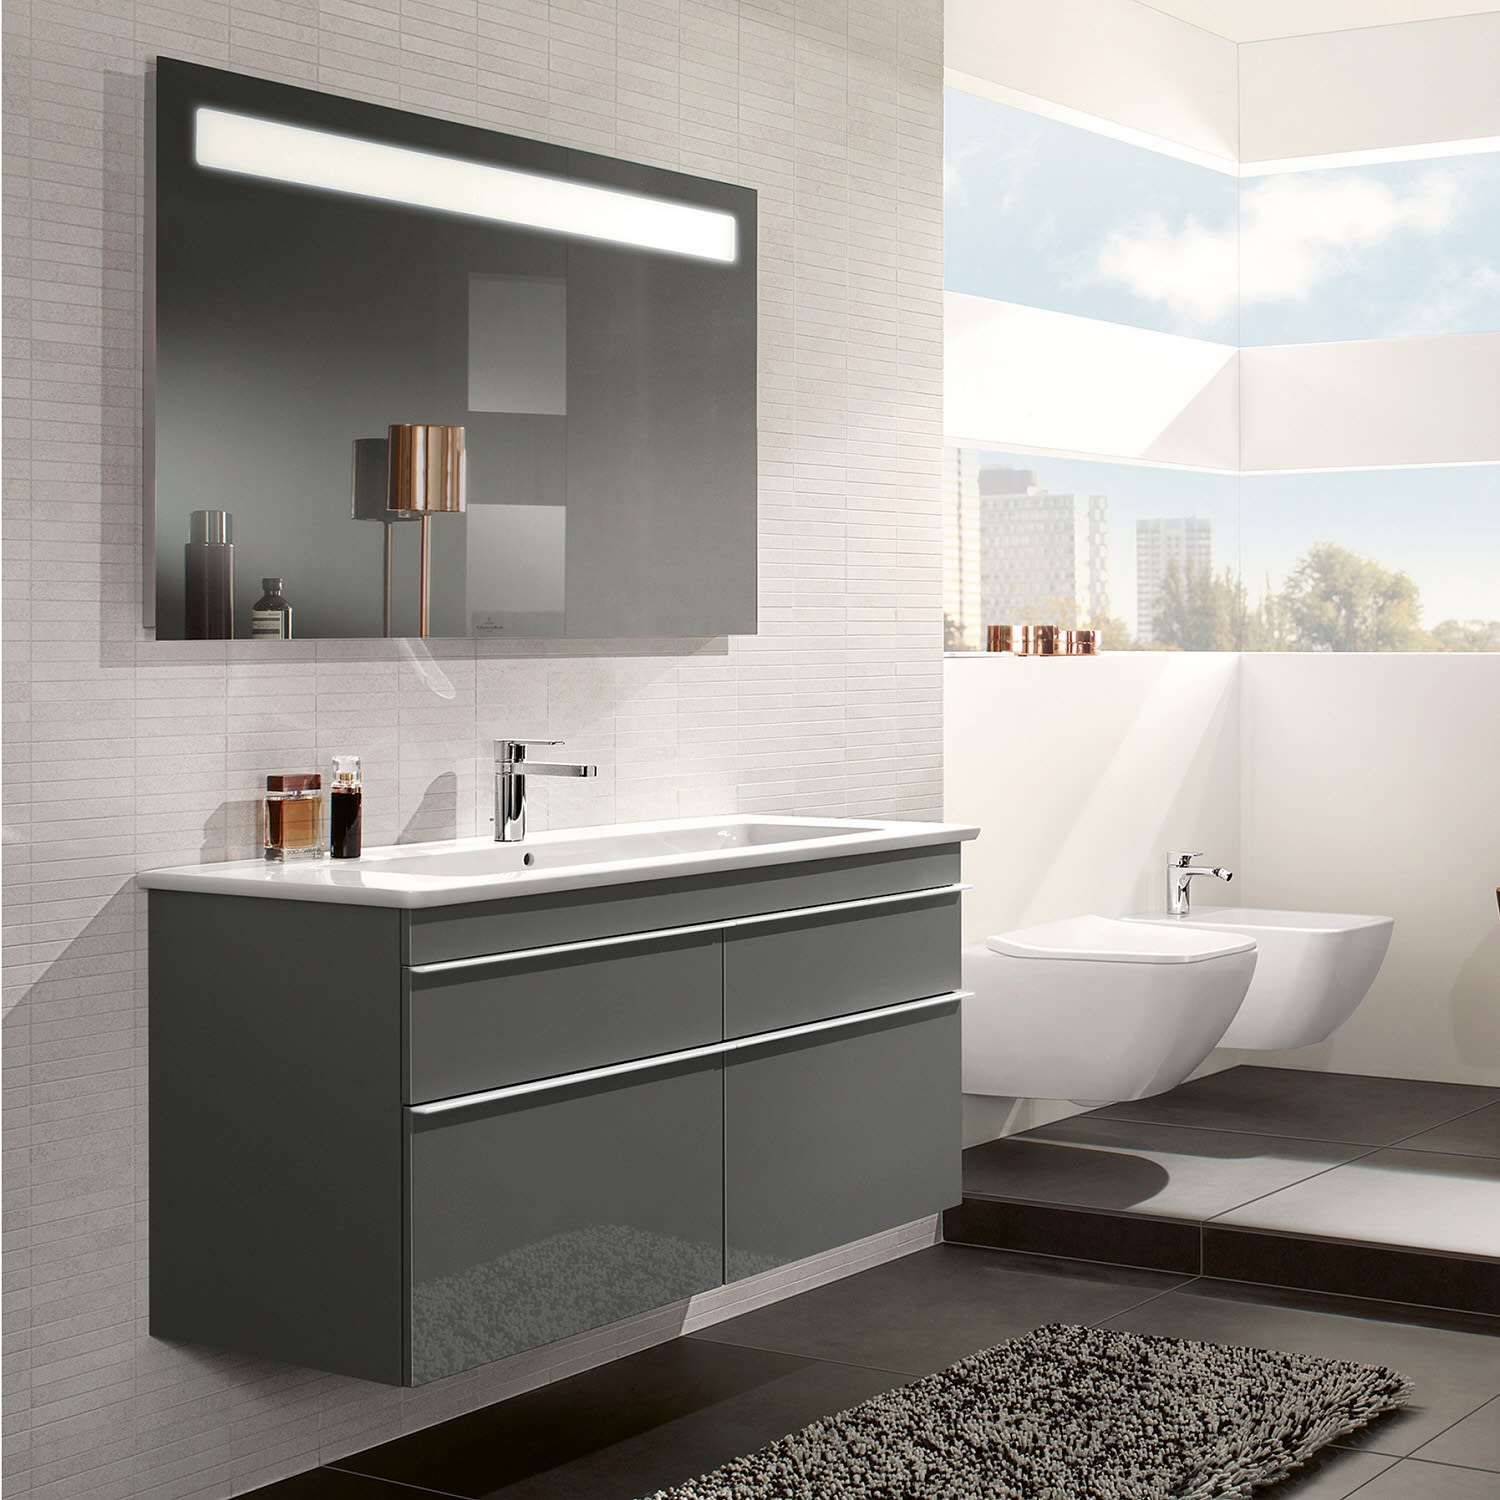 Hoe creeer je een luxe moderne badkamer?